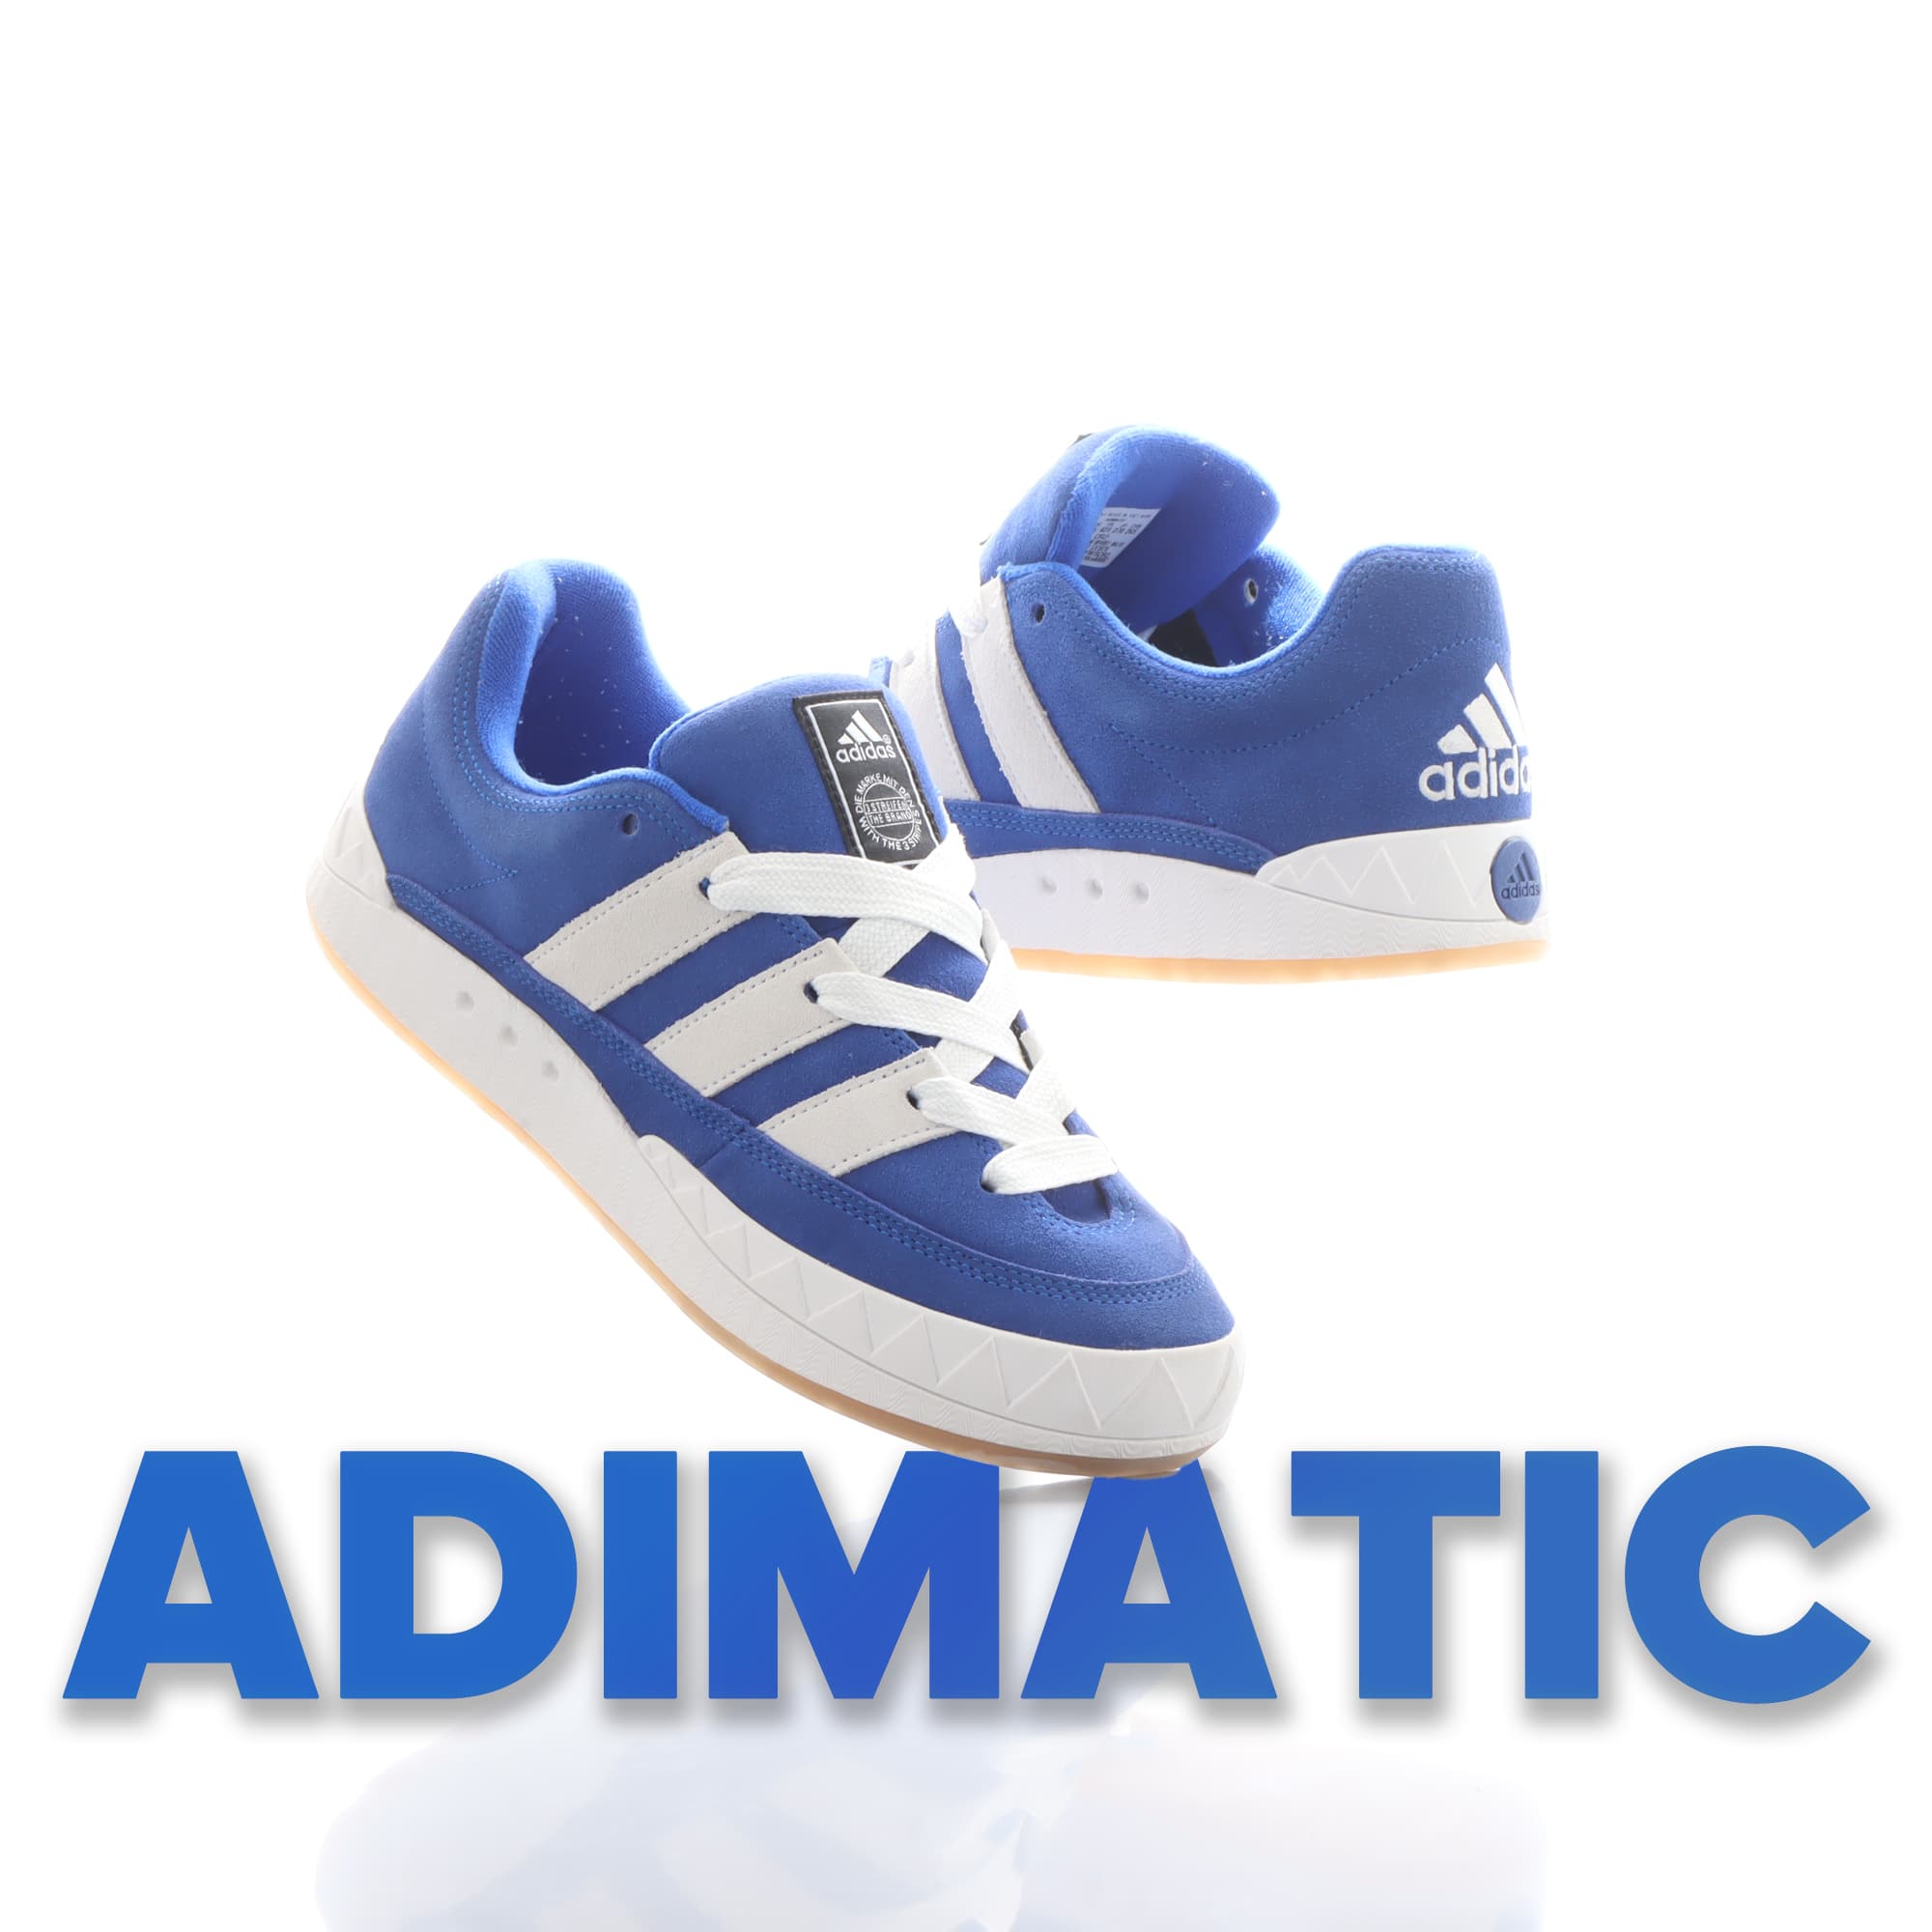 adidas Originals ADIMATIC atmos BLUE